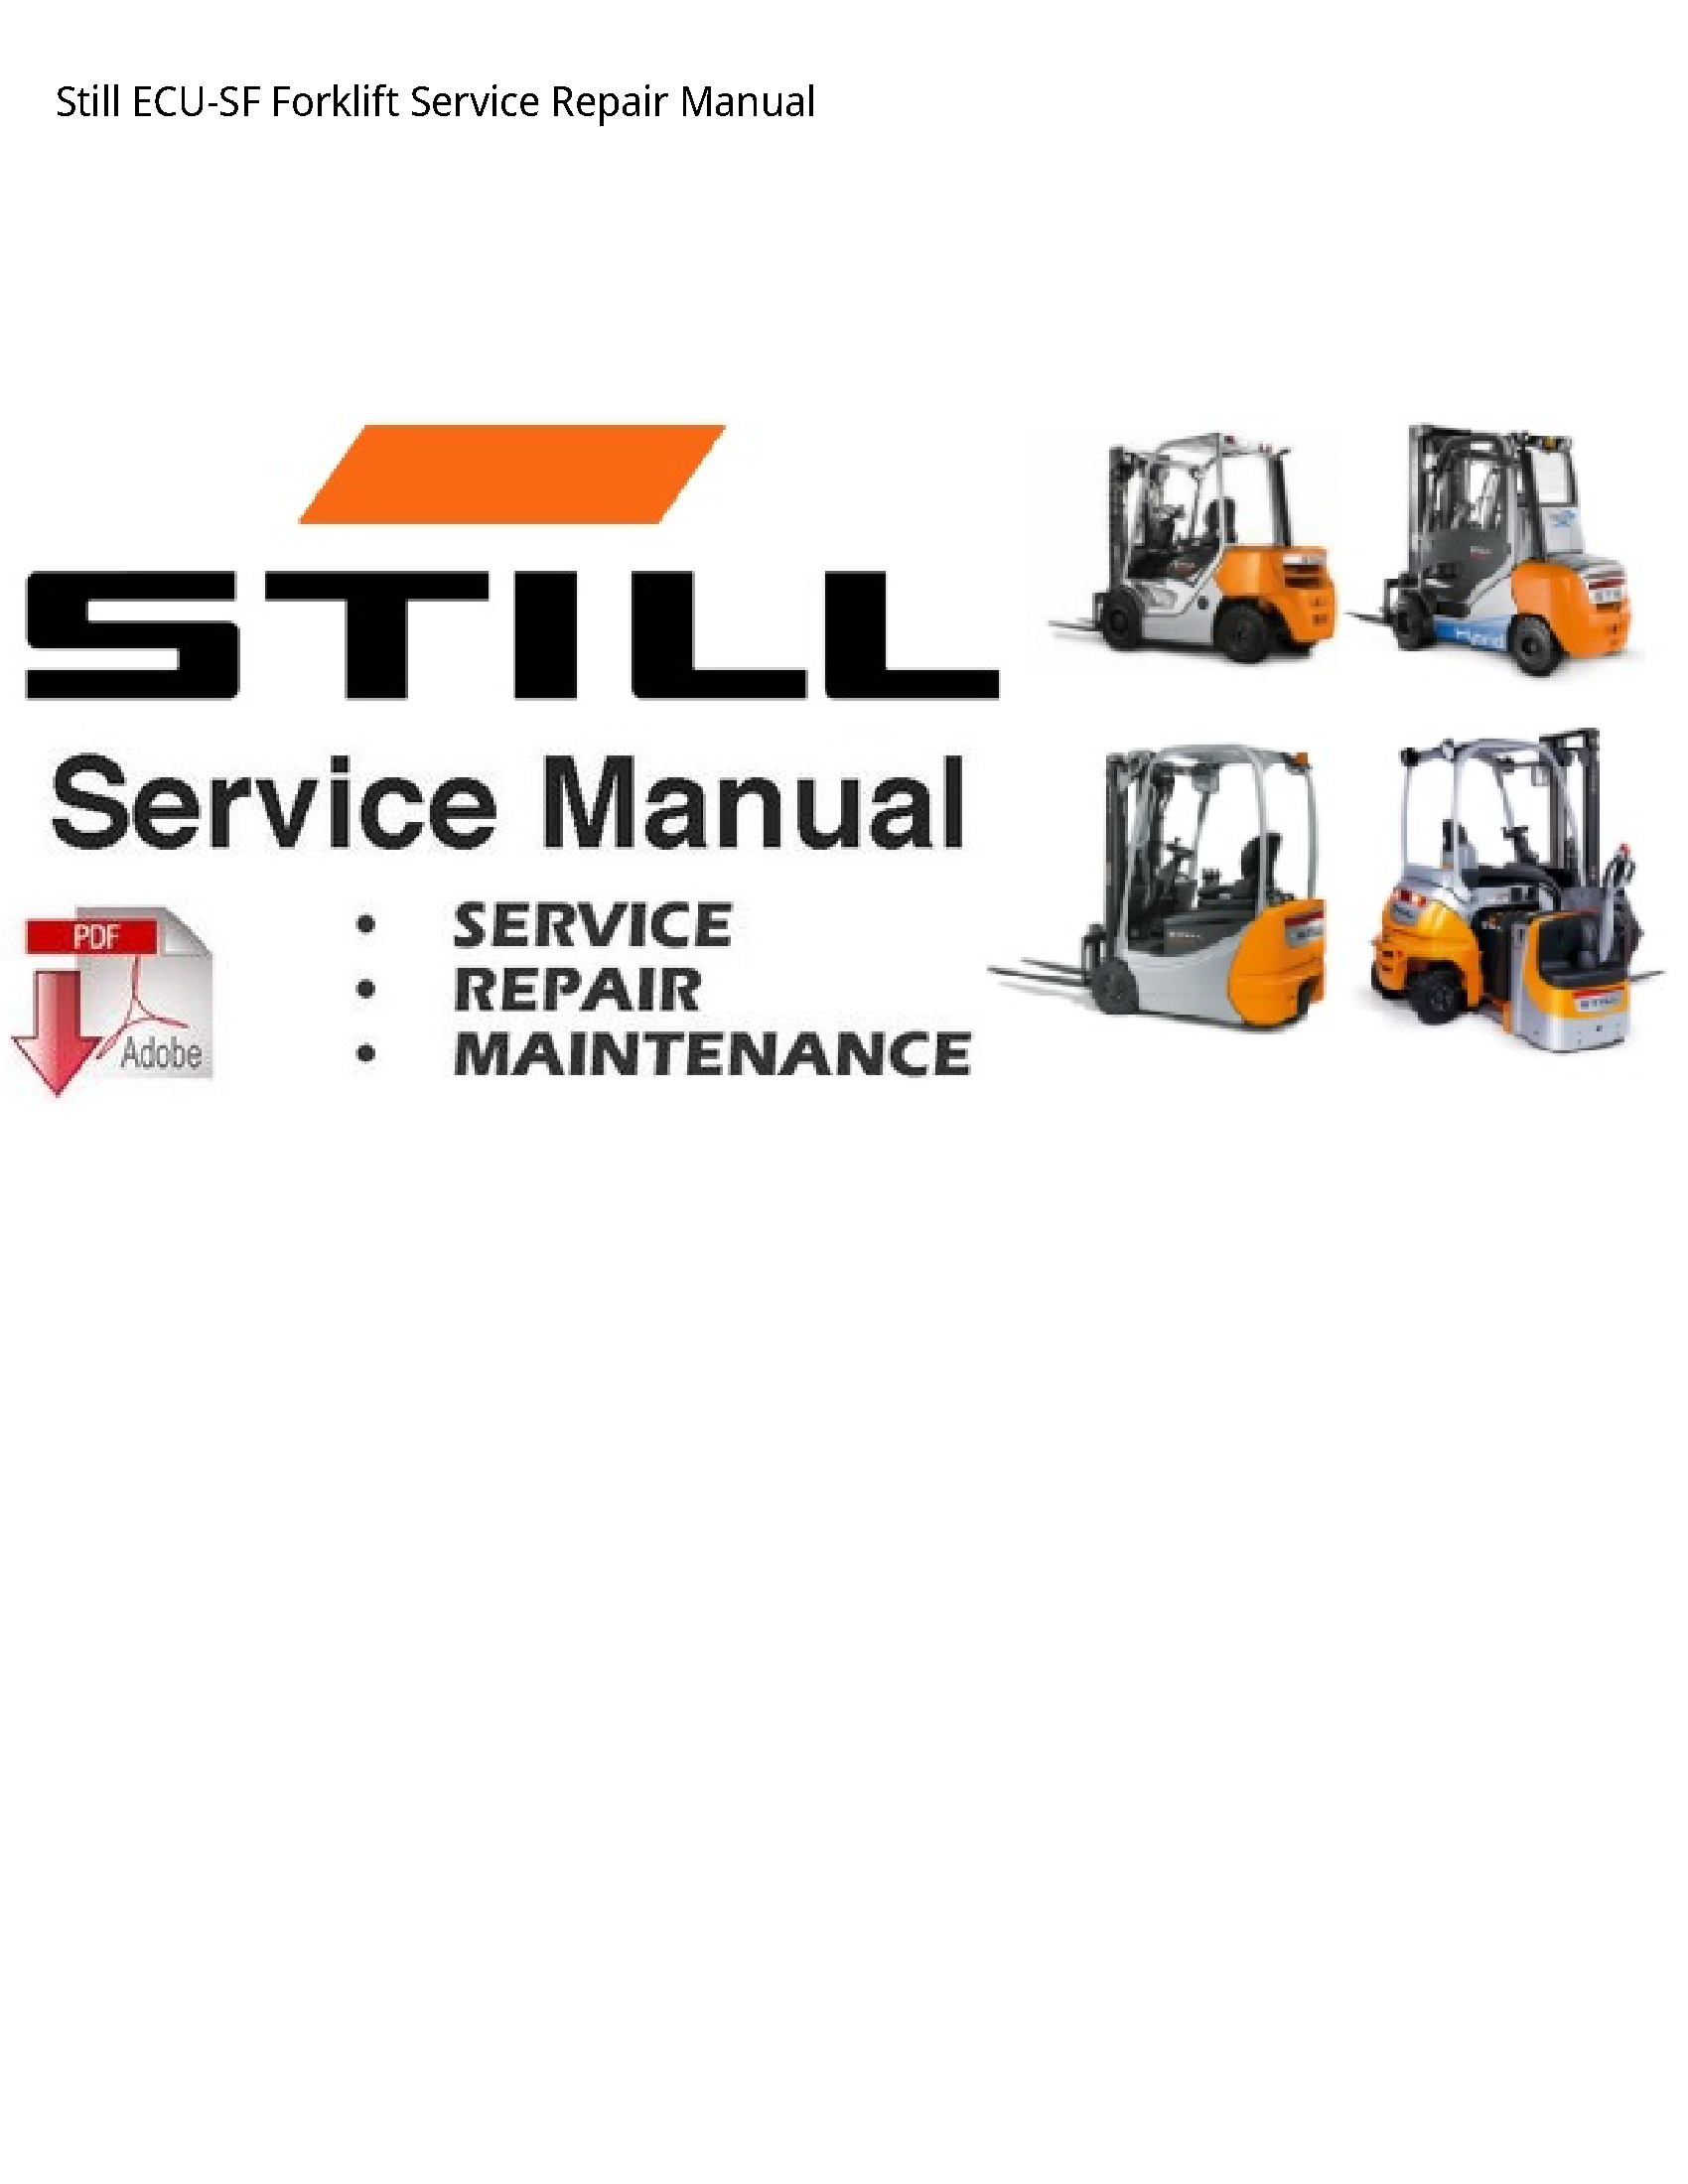 Still ECU-SF Forklift manual